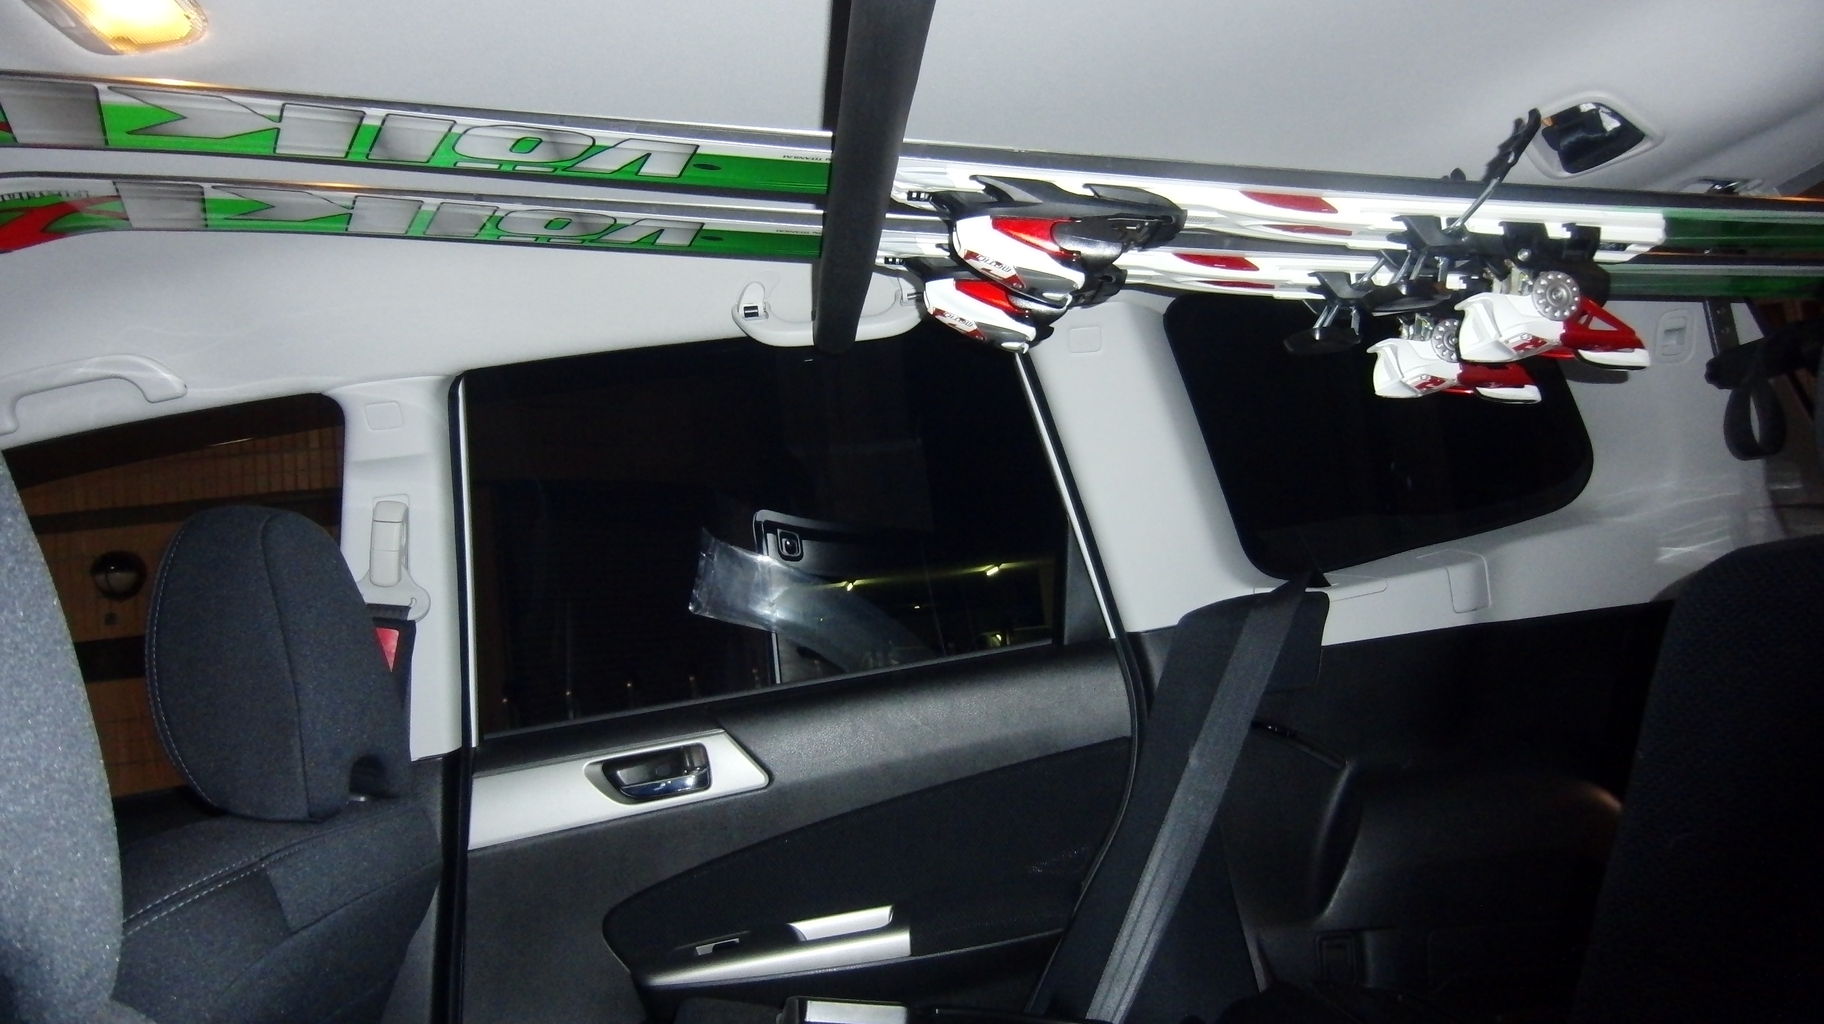 Subaruスバル フォレスター 荷室チャイルドシート金具ありスキー板中積み なみのりこぞう スタッフブログ